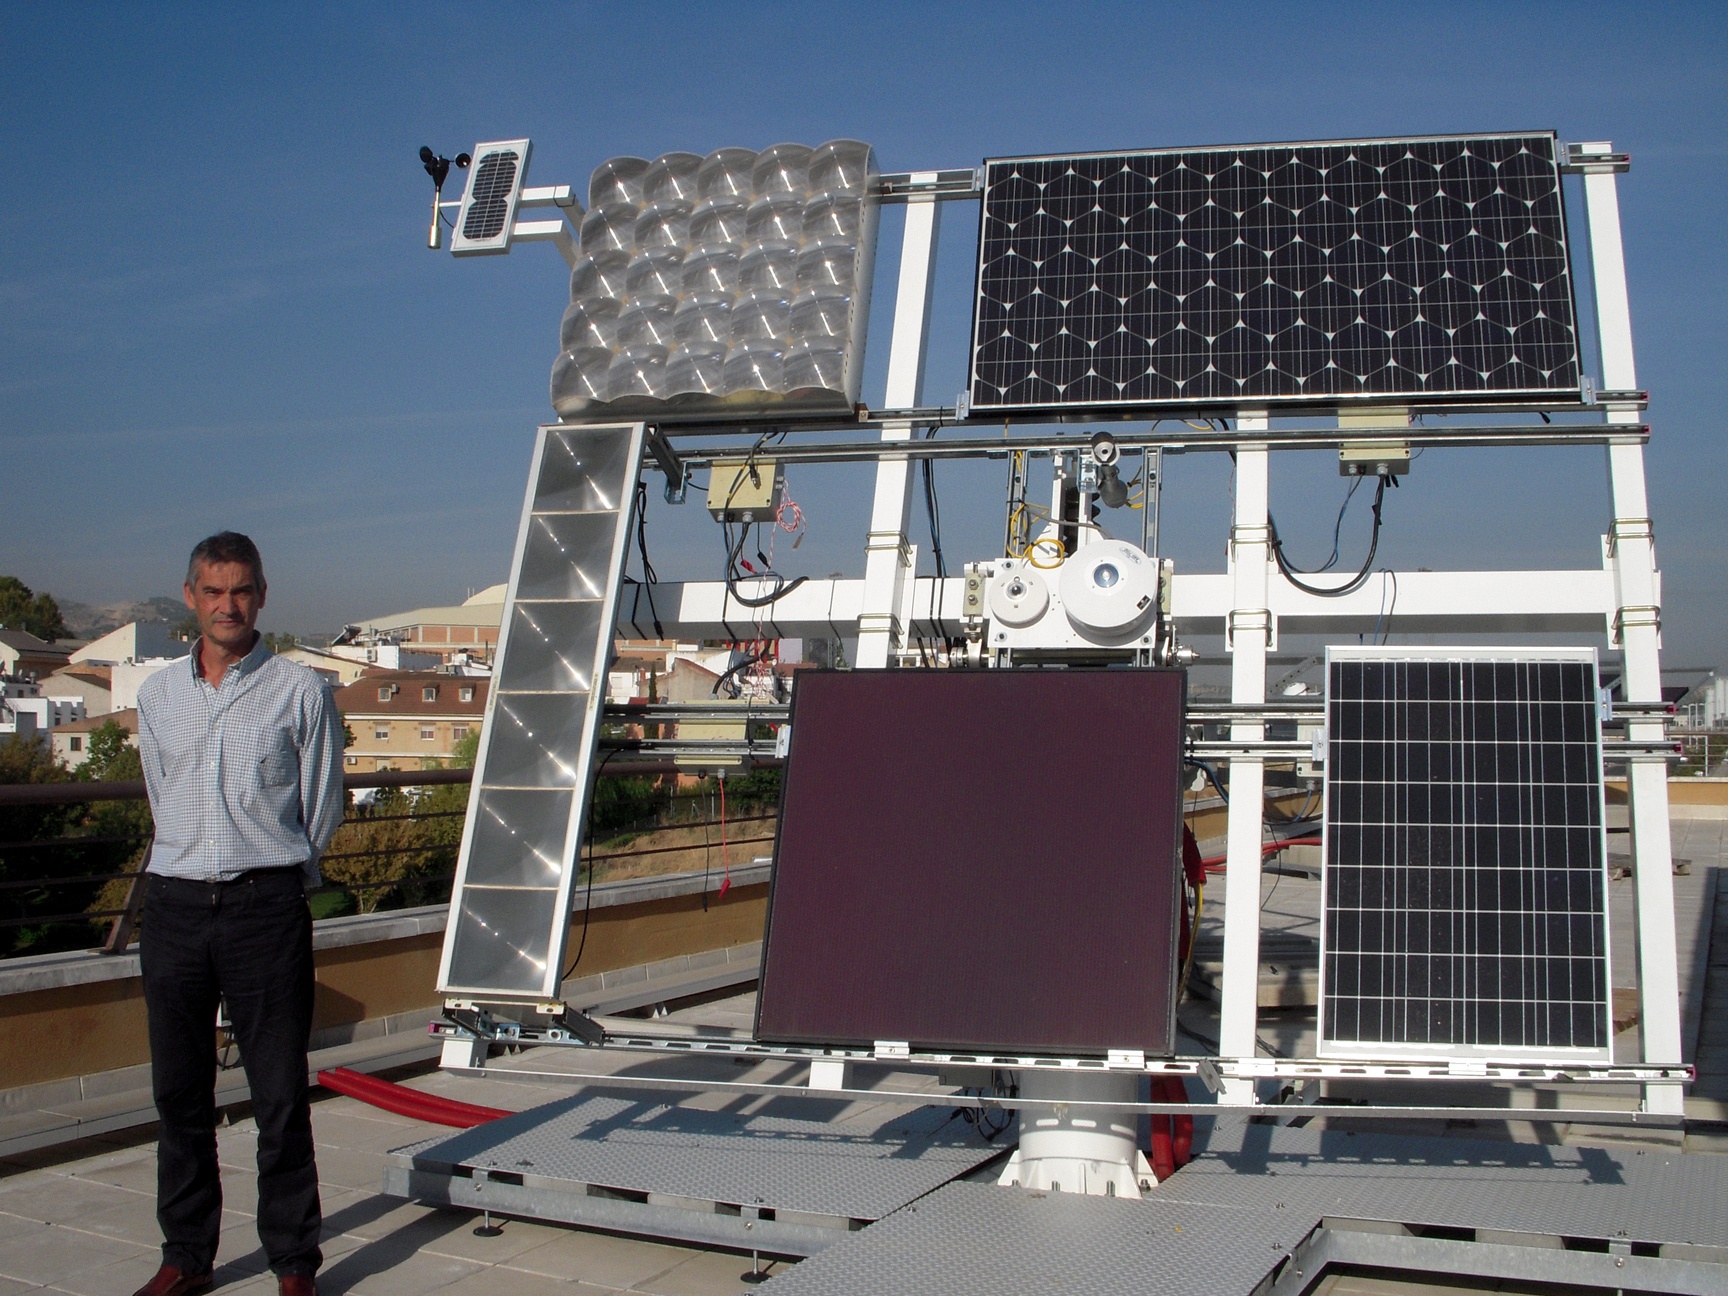 Científicos de la UJA investigan el comportamiento nuevos materiales para construir paneles solares | Diario Digital de la UJA | Compromiso con sociedad